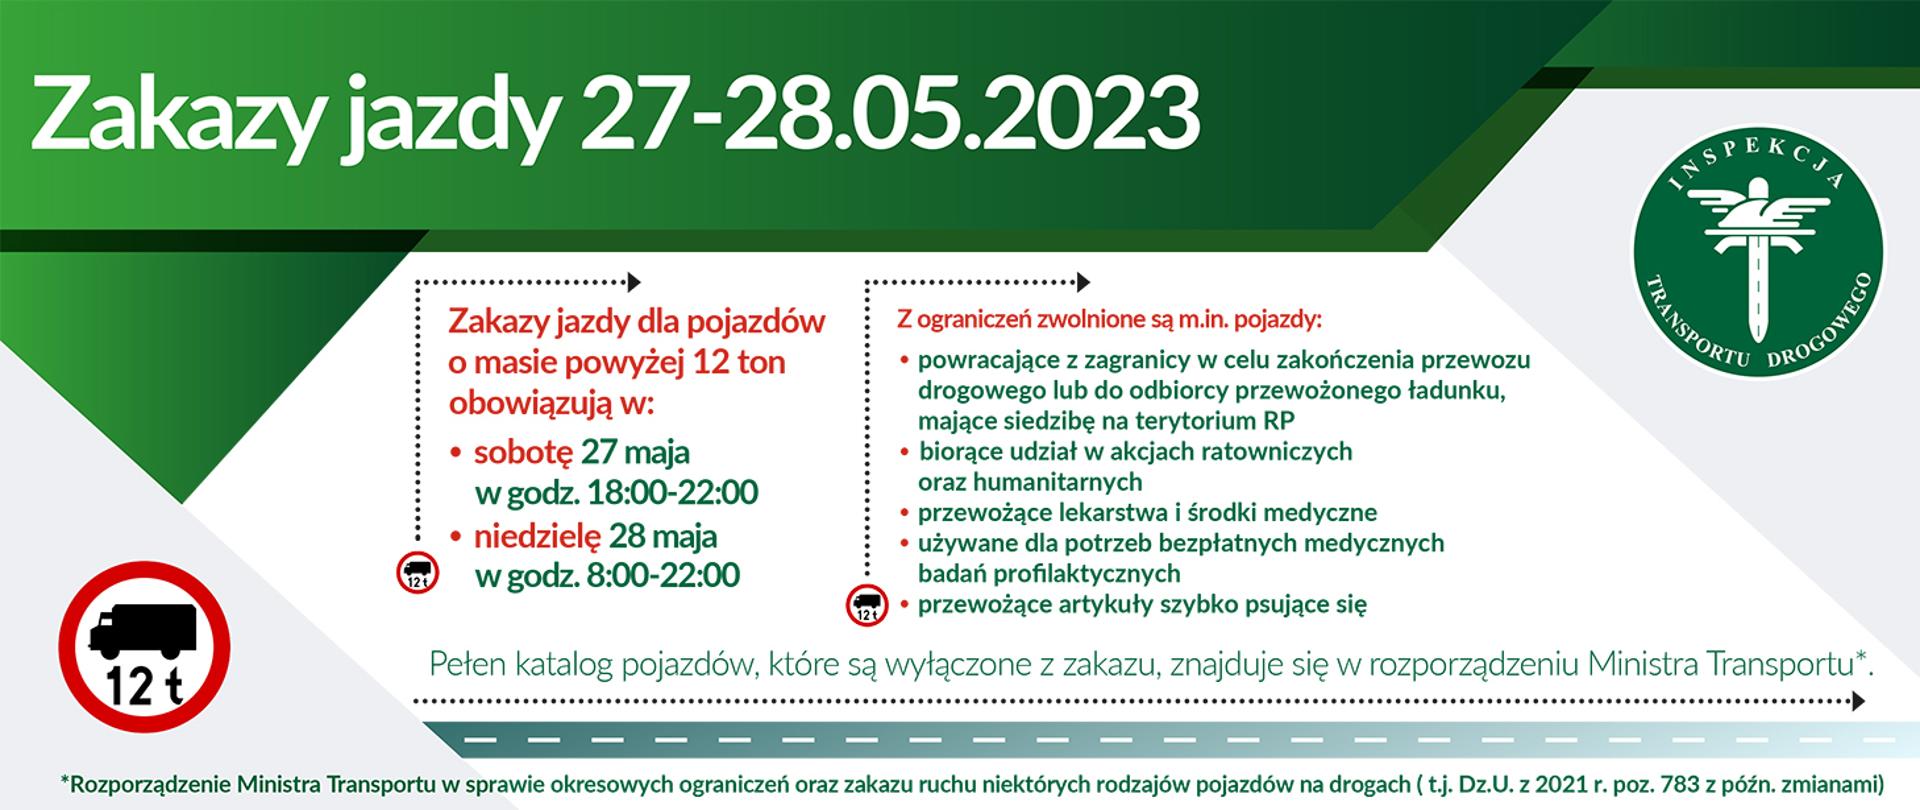 Grafika informująca o zakazach jazdy w dniach 27-28 maja. Na grafice jest informacja o tym, że zakazy jazdy dla niektórych pojazdów ciężarowych, obowiązują w sobotę między 18:00 a 22:00 i w niedzielę między 8:00 a 22:00.